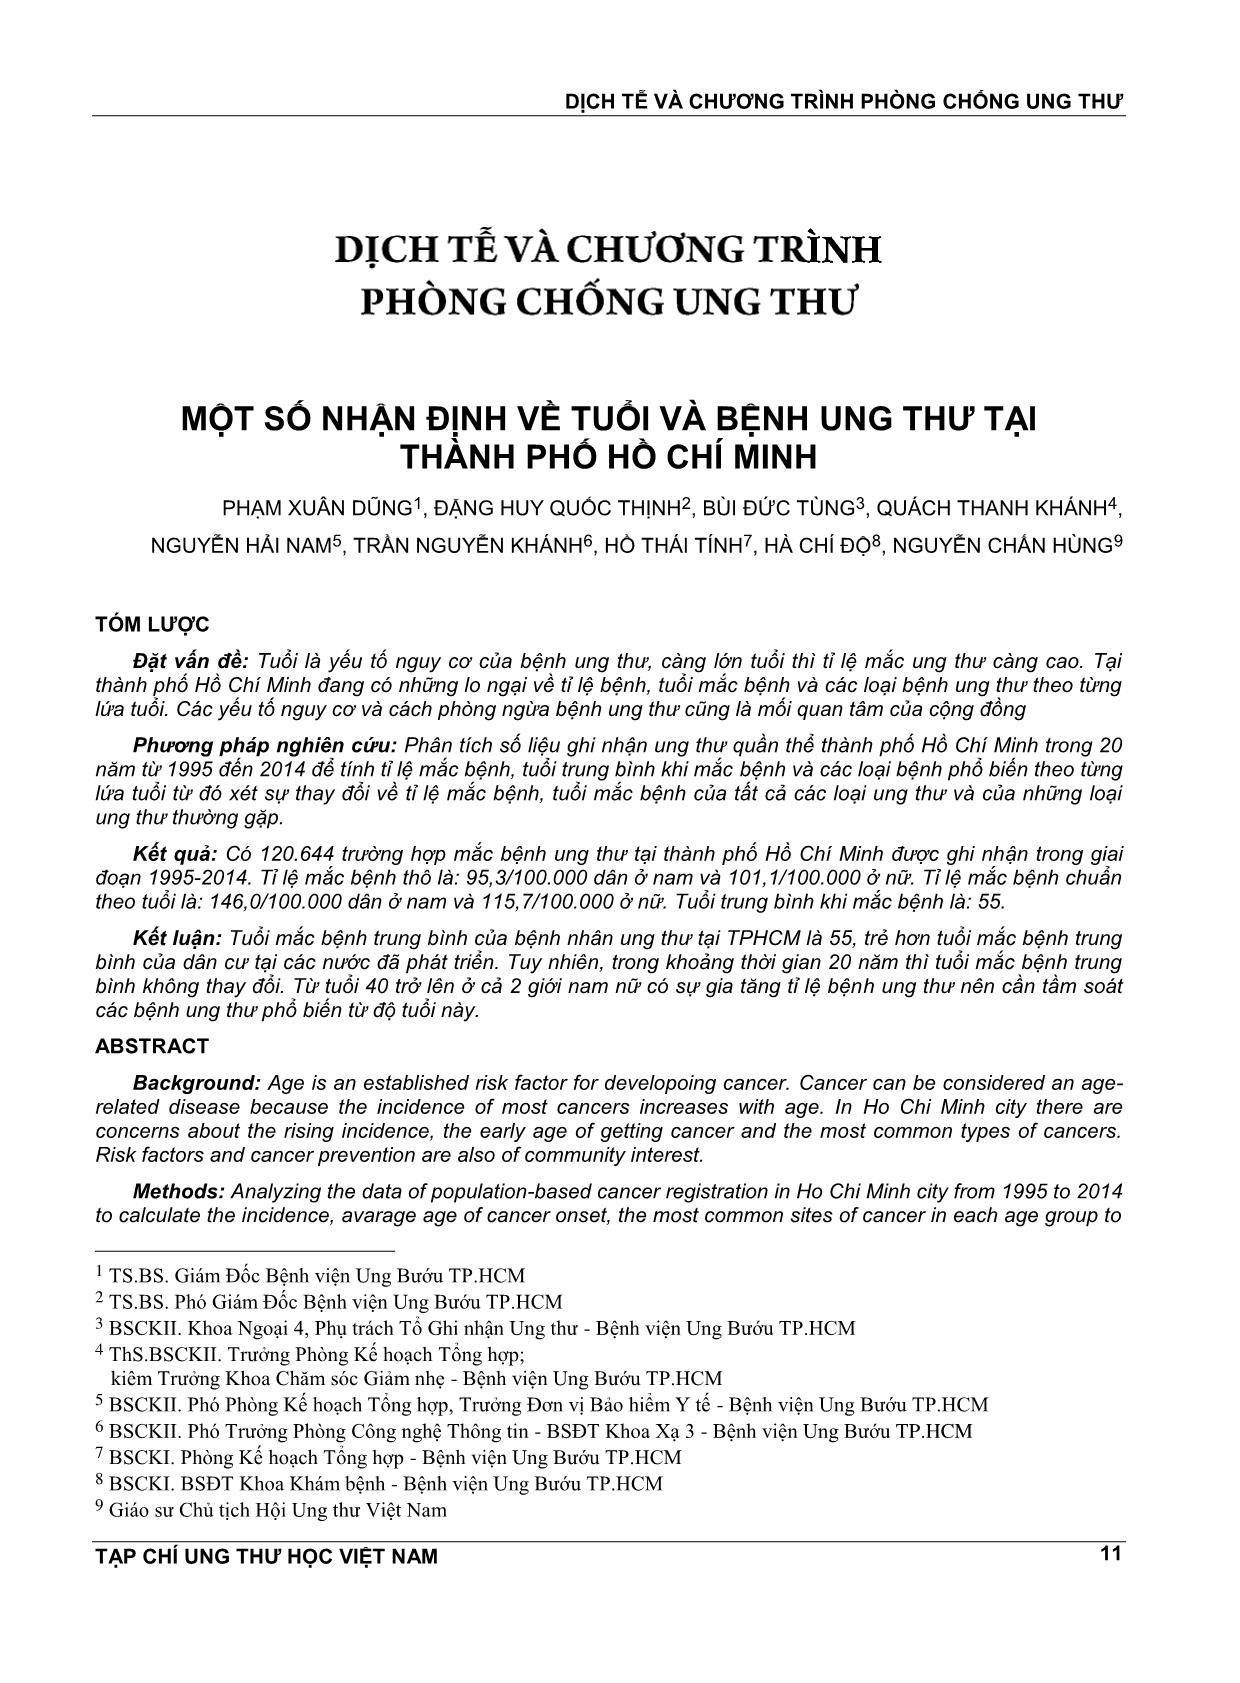 Một số nhận định về tuổi và bệnh ung thư tại thành phố Hồ Chí Minh trang 1